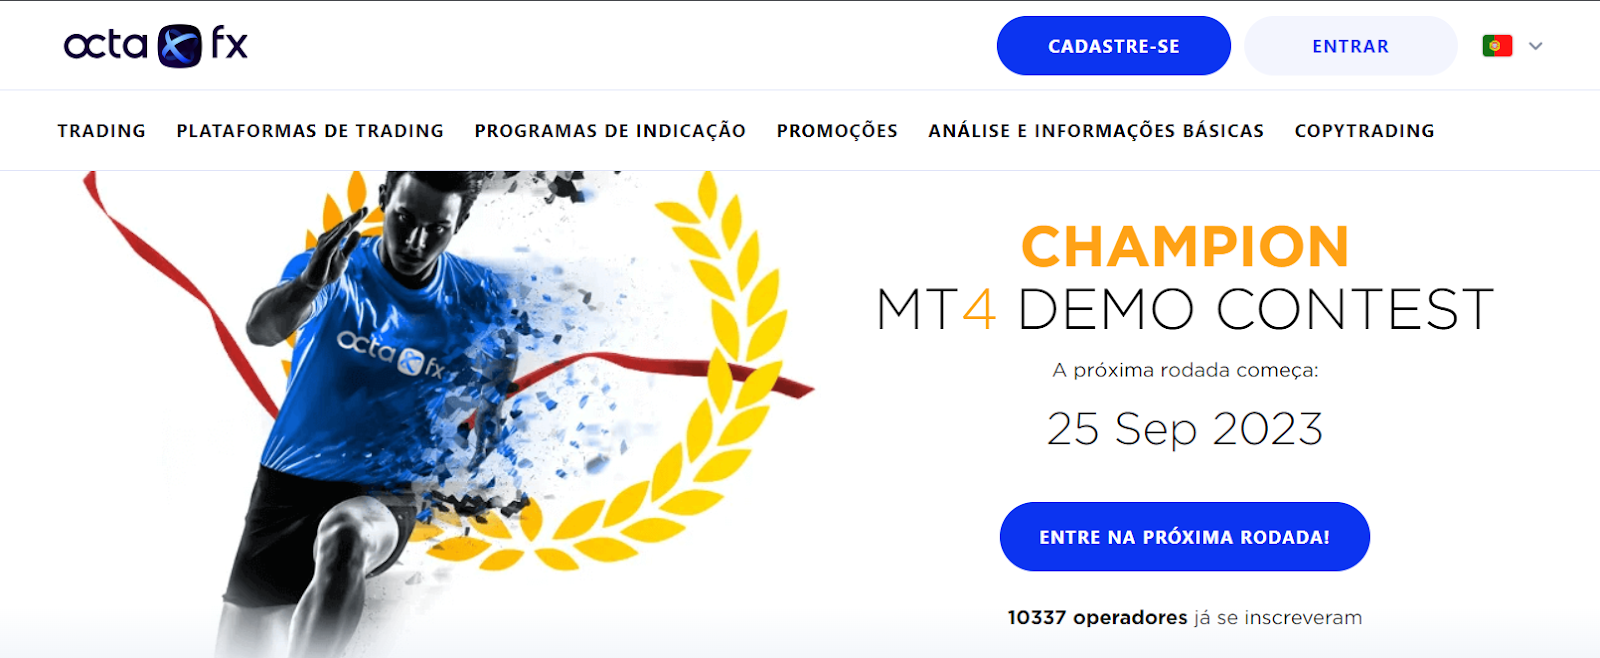 Bônus da OctaFX - Concurso de contas demo no MT4